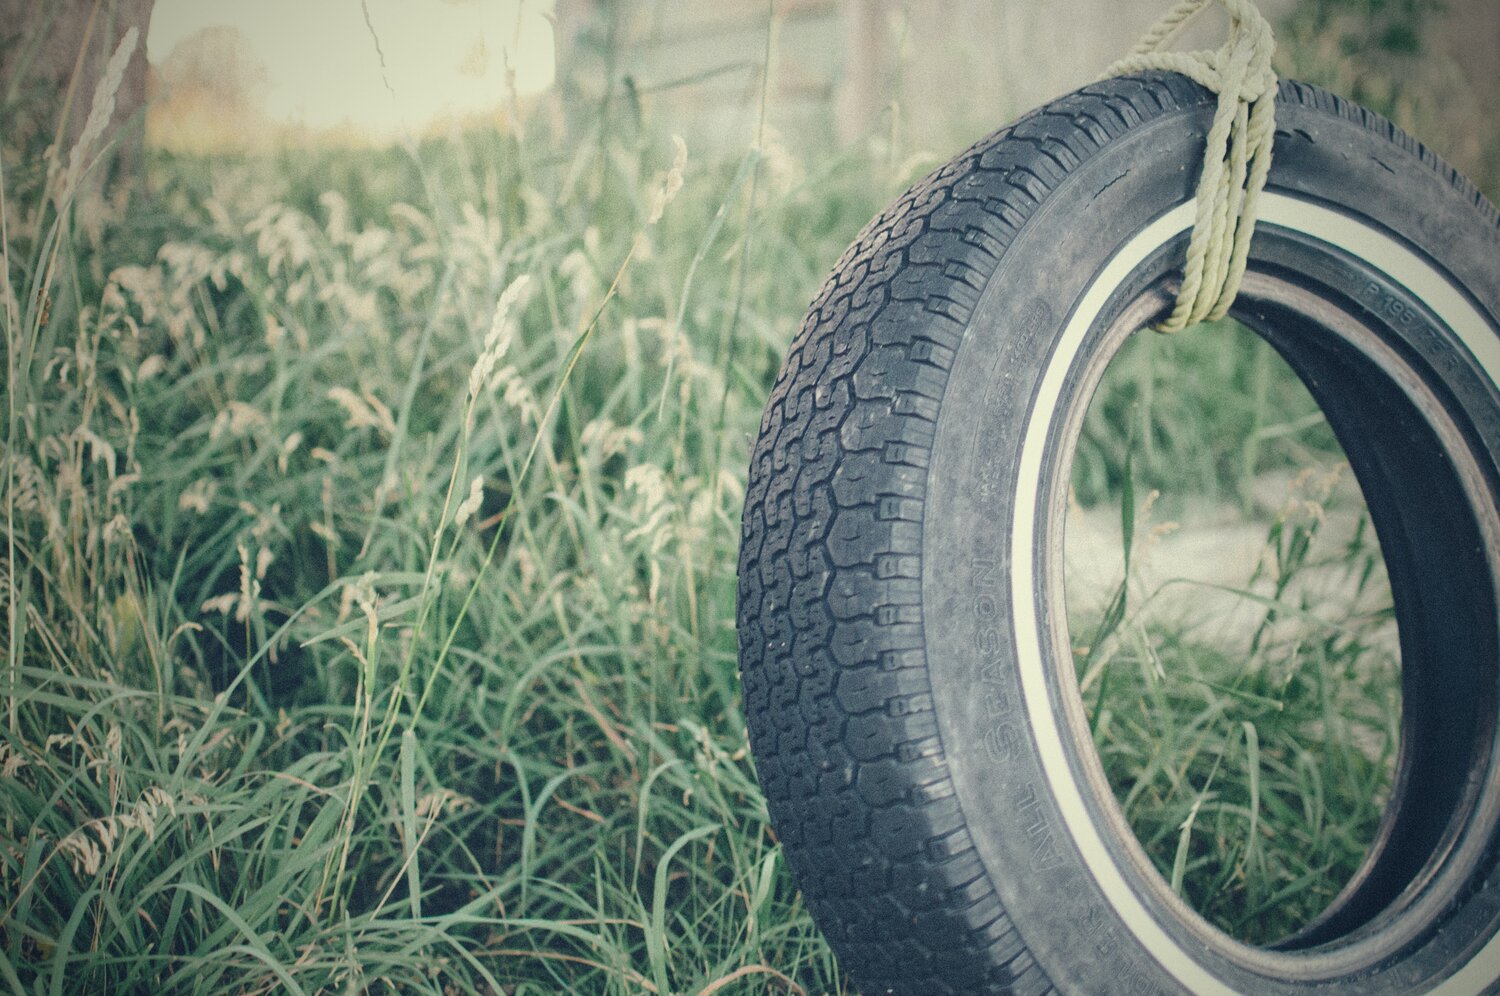 Tire swing in yard